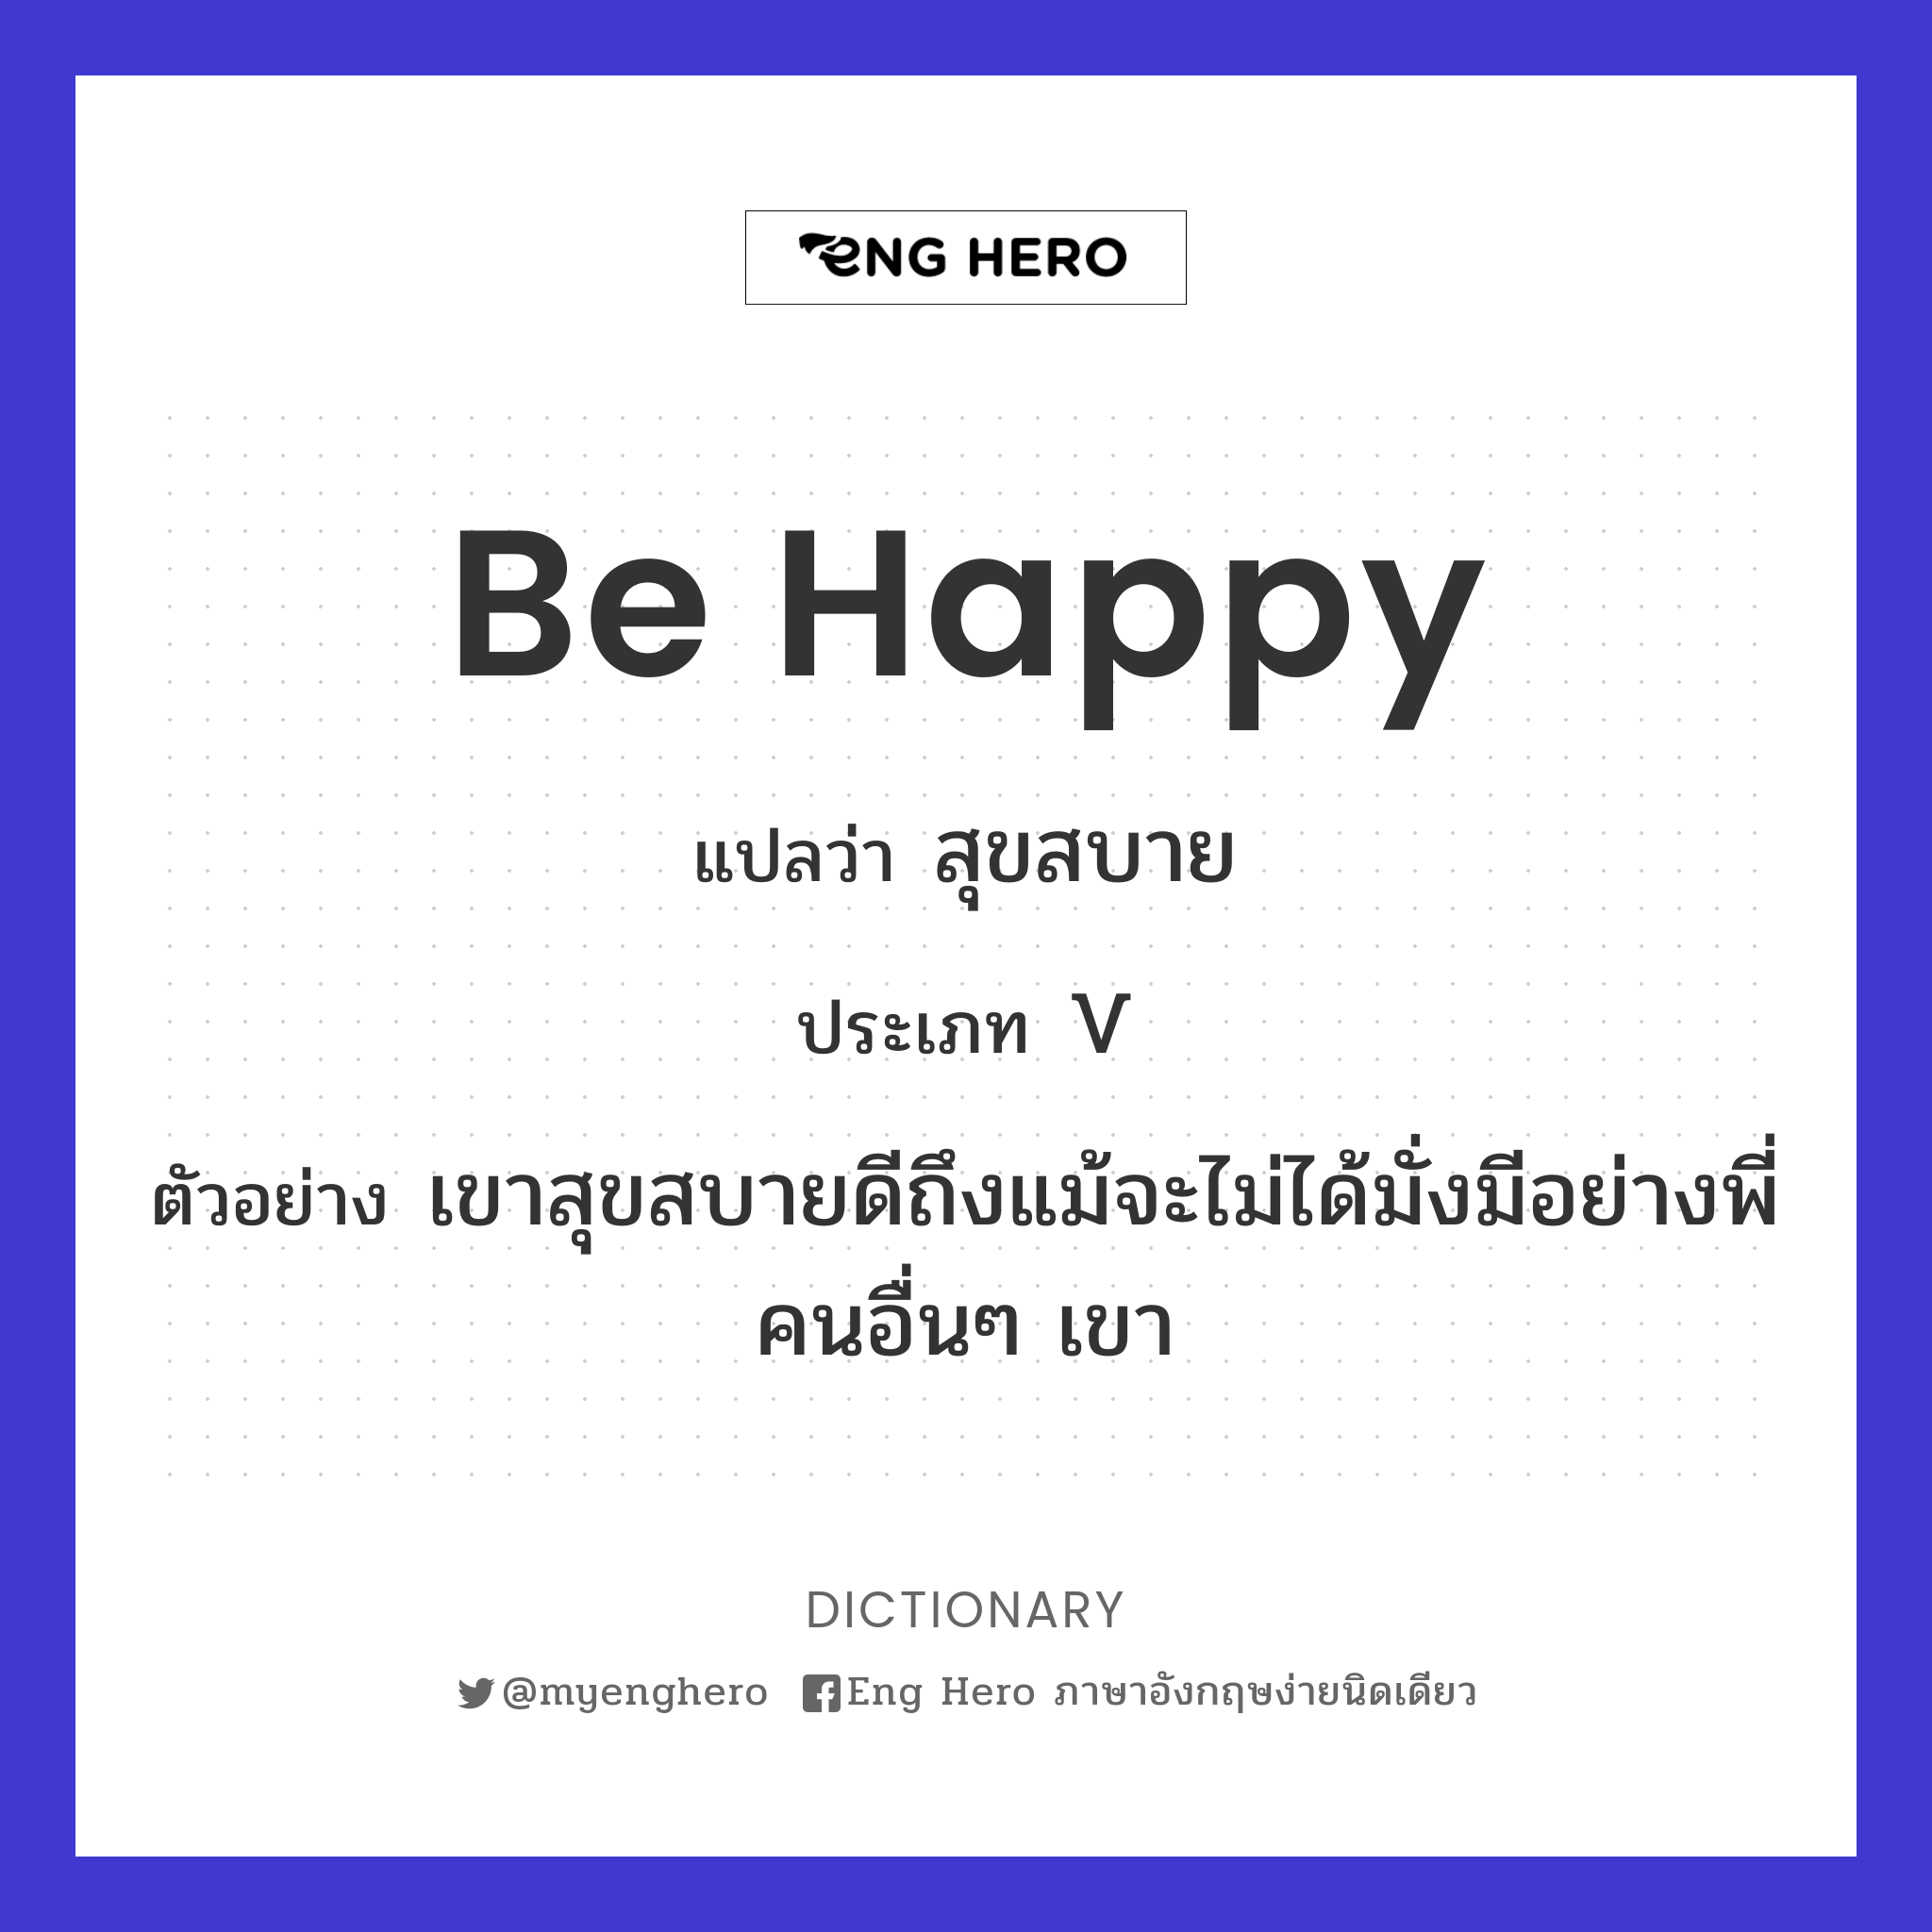 Be Happy แปลว่า สำราญ | Eng Hero เรียนภาษาอังกฤษ ออนไลน์ ฟรี